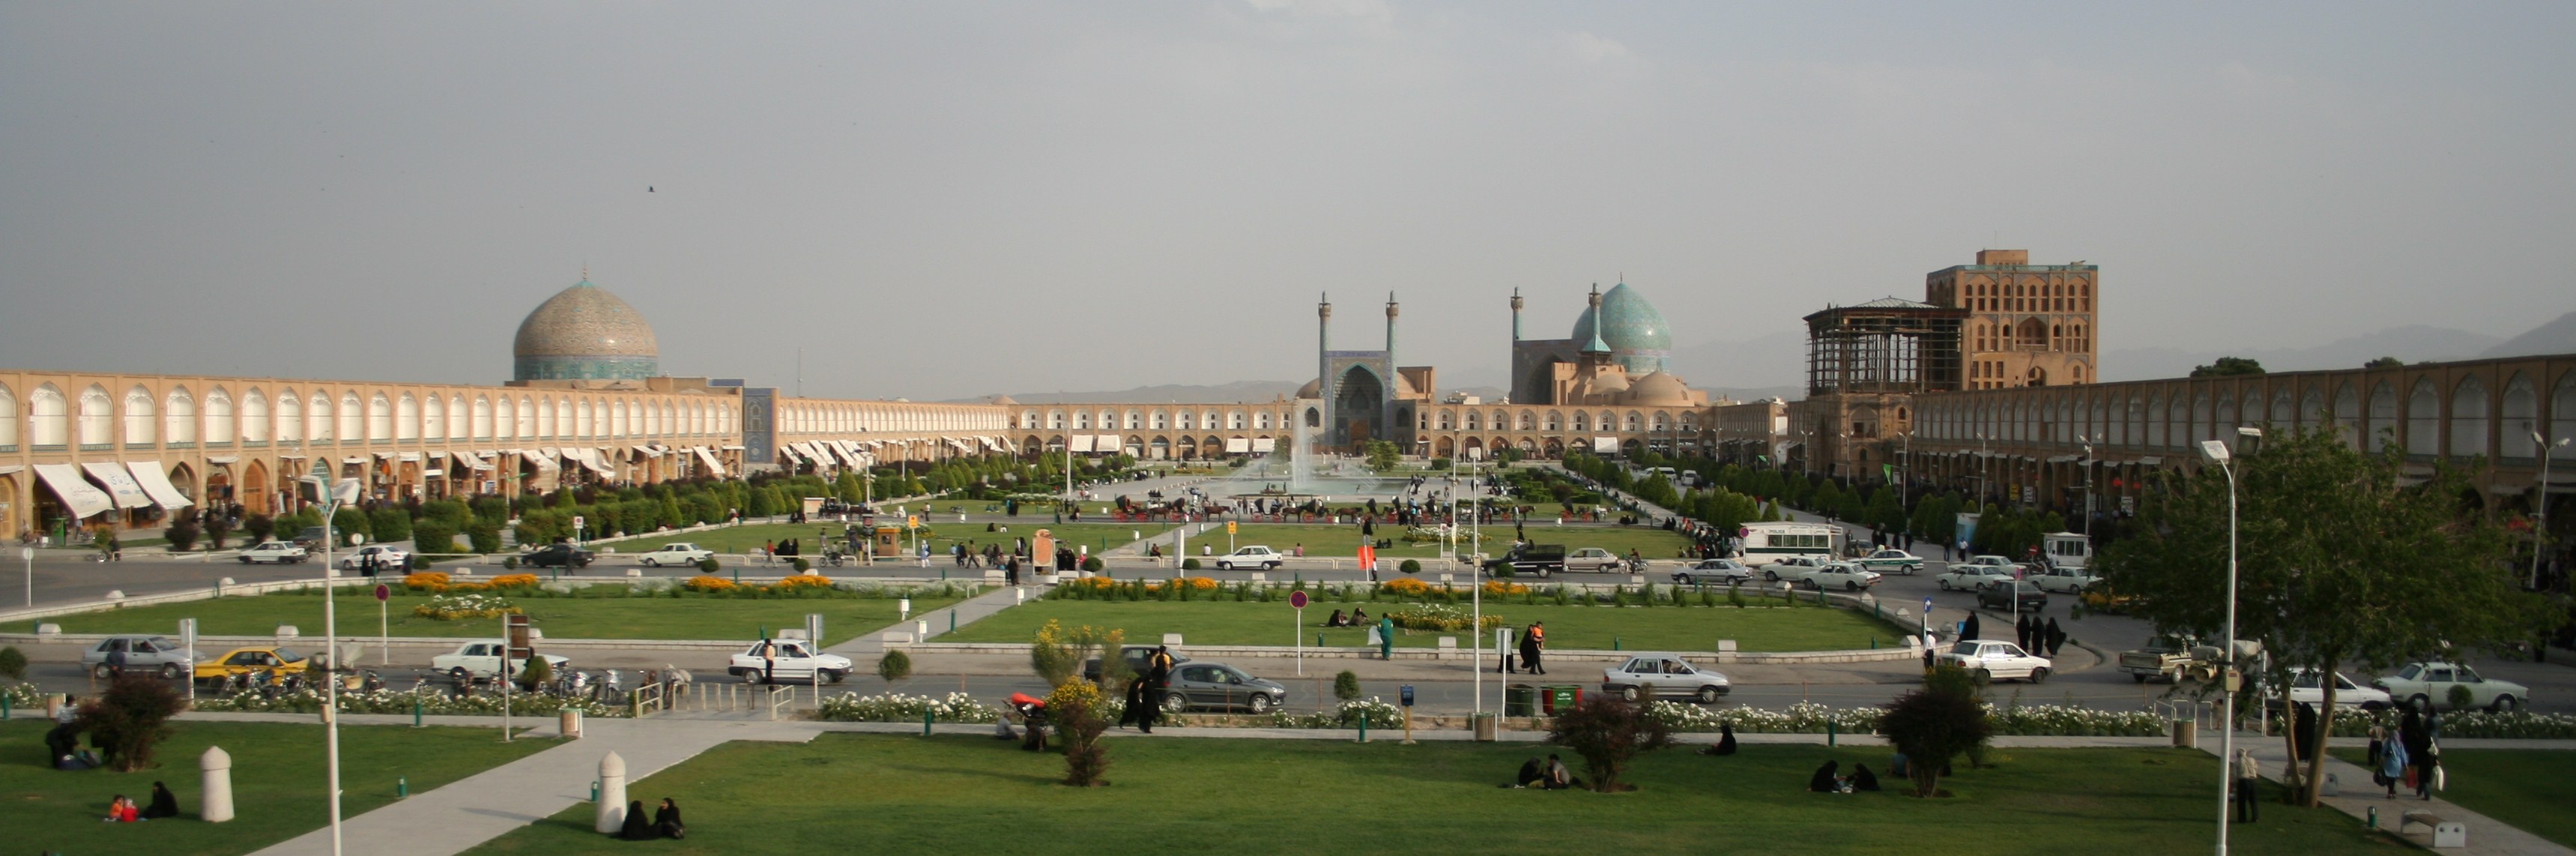 Isfahan_Naqsh-i_Jahan